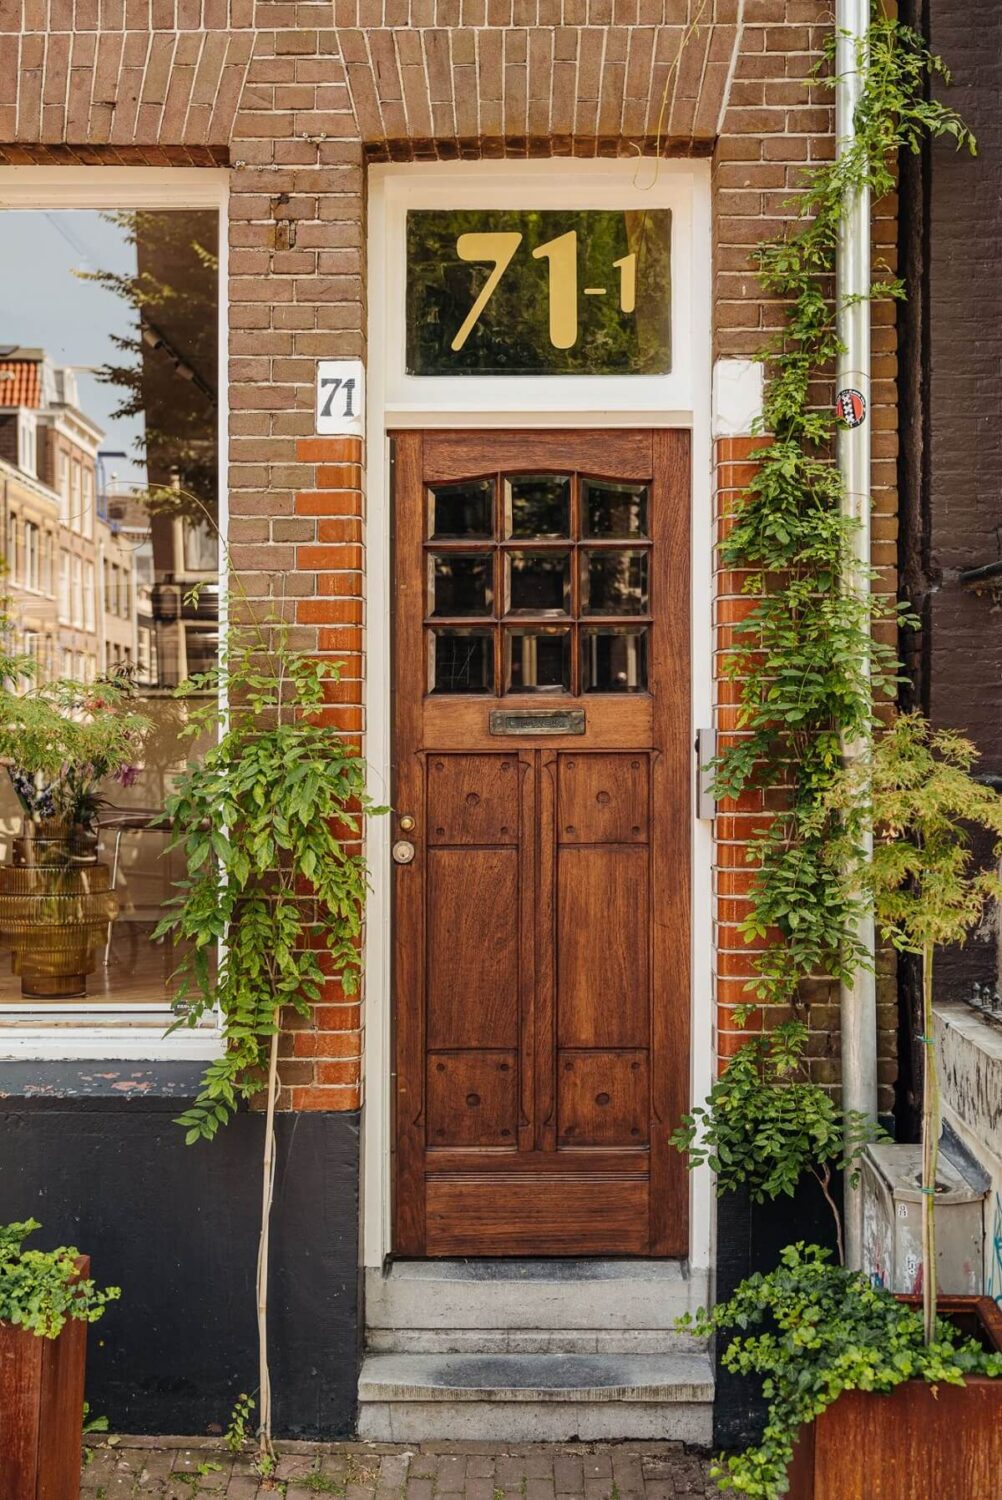 original-front-door-canal-house-amsterdam-nordroom